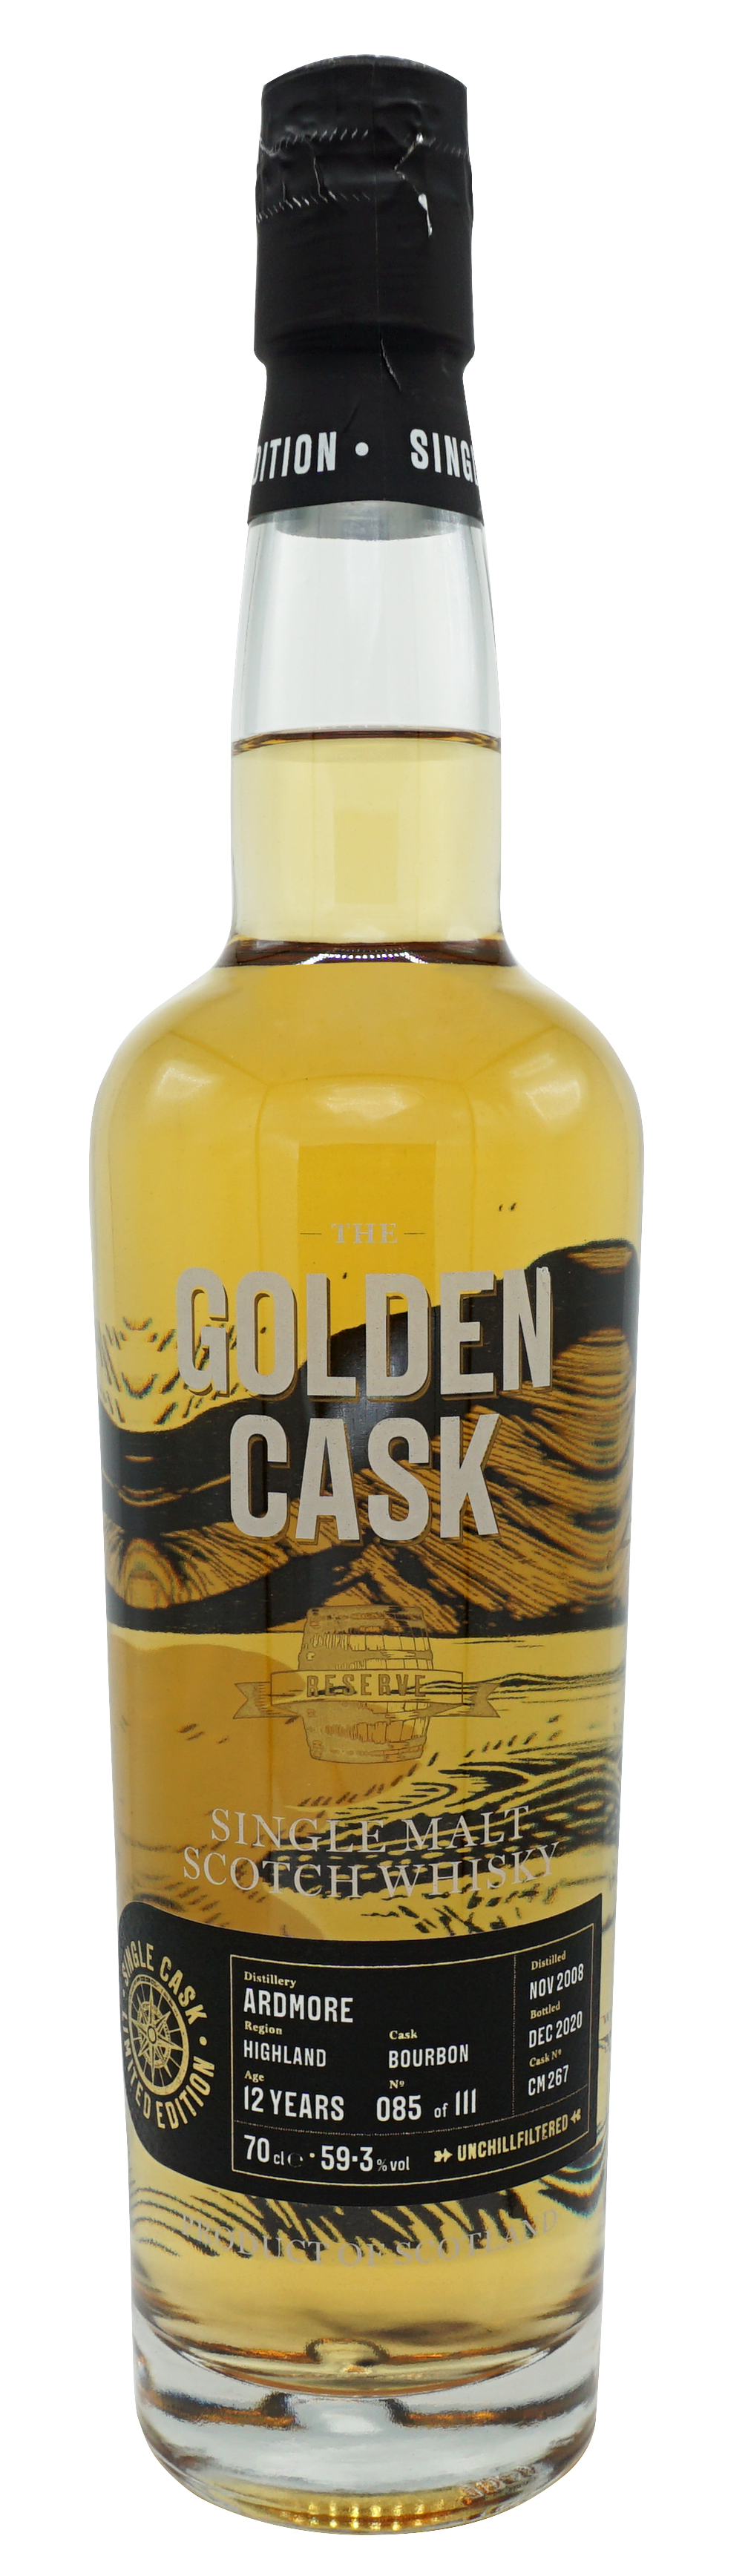 Golden Cask 59.3